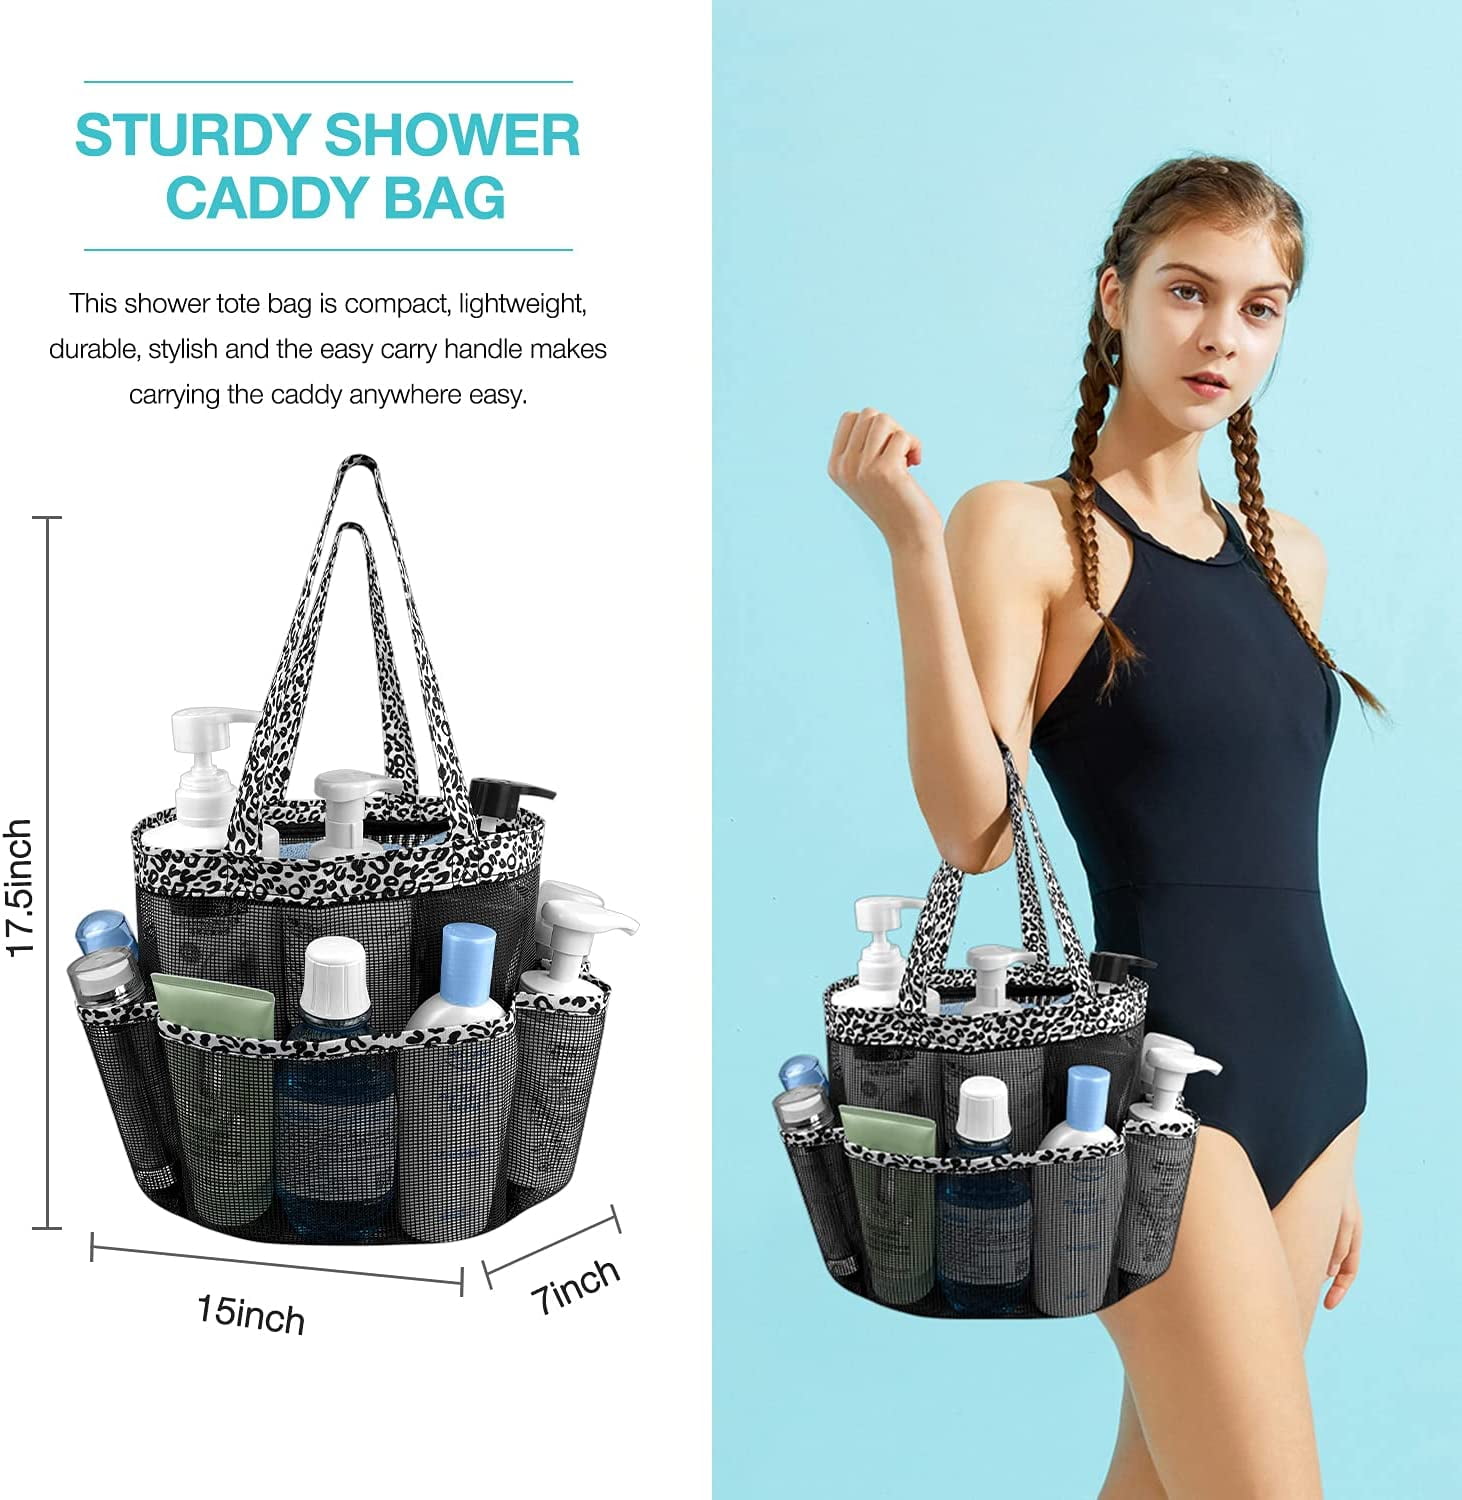 Ocim XL Mesh Shower Caddy Tote Bag - Large Portable Shower Caddy Basket for  Dorm